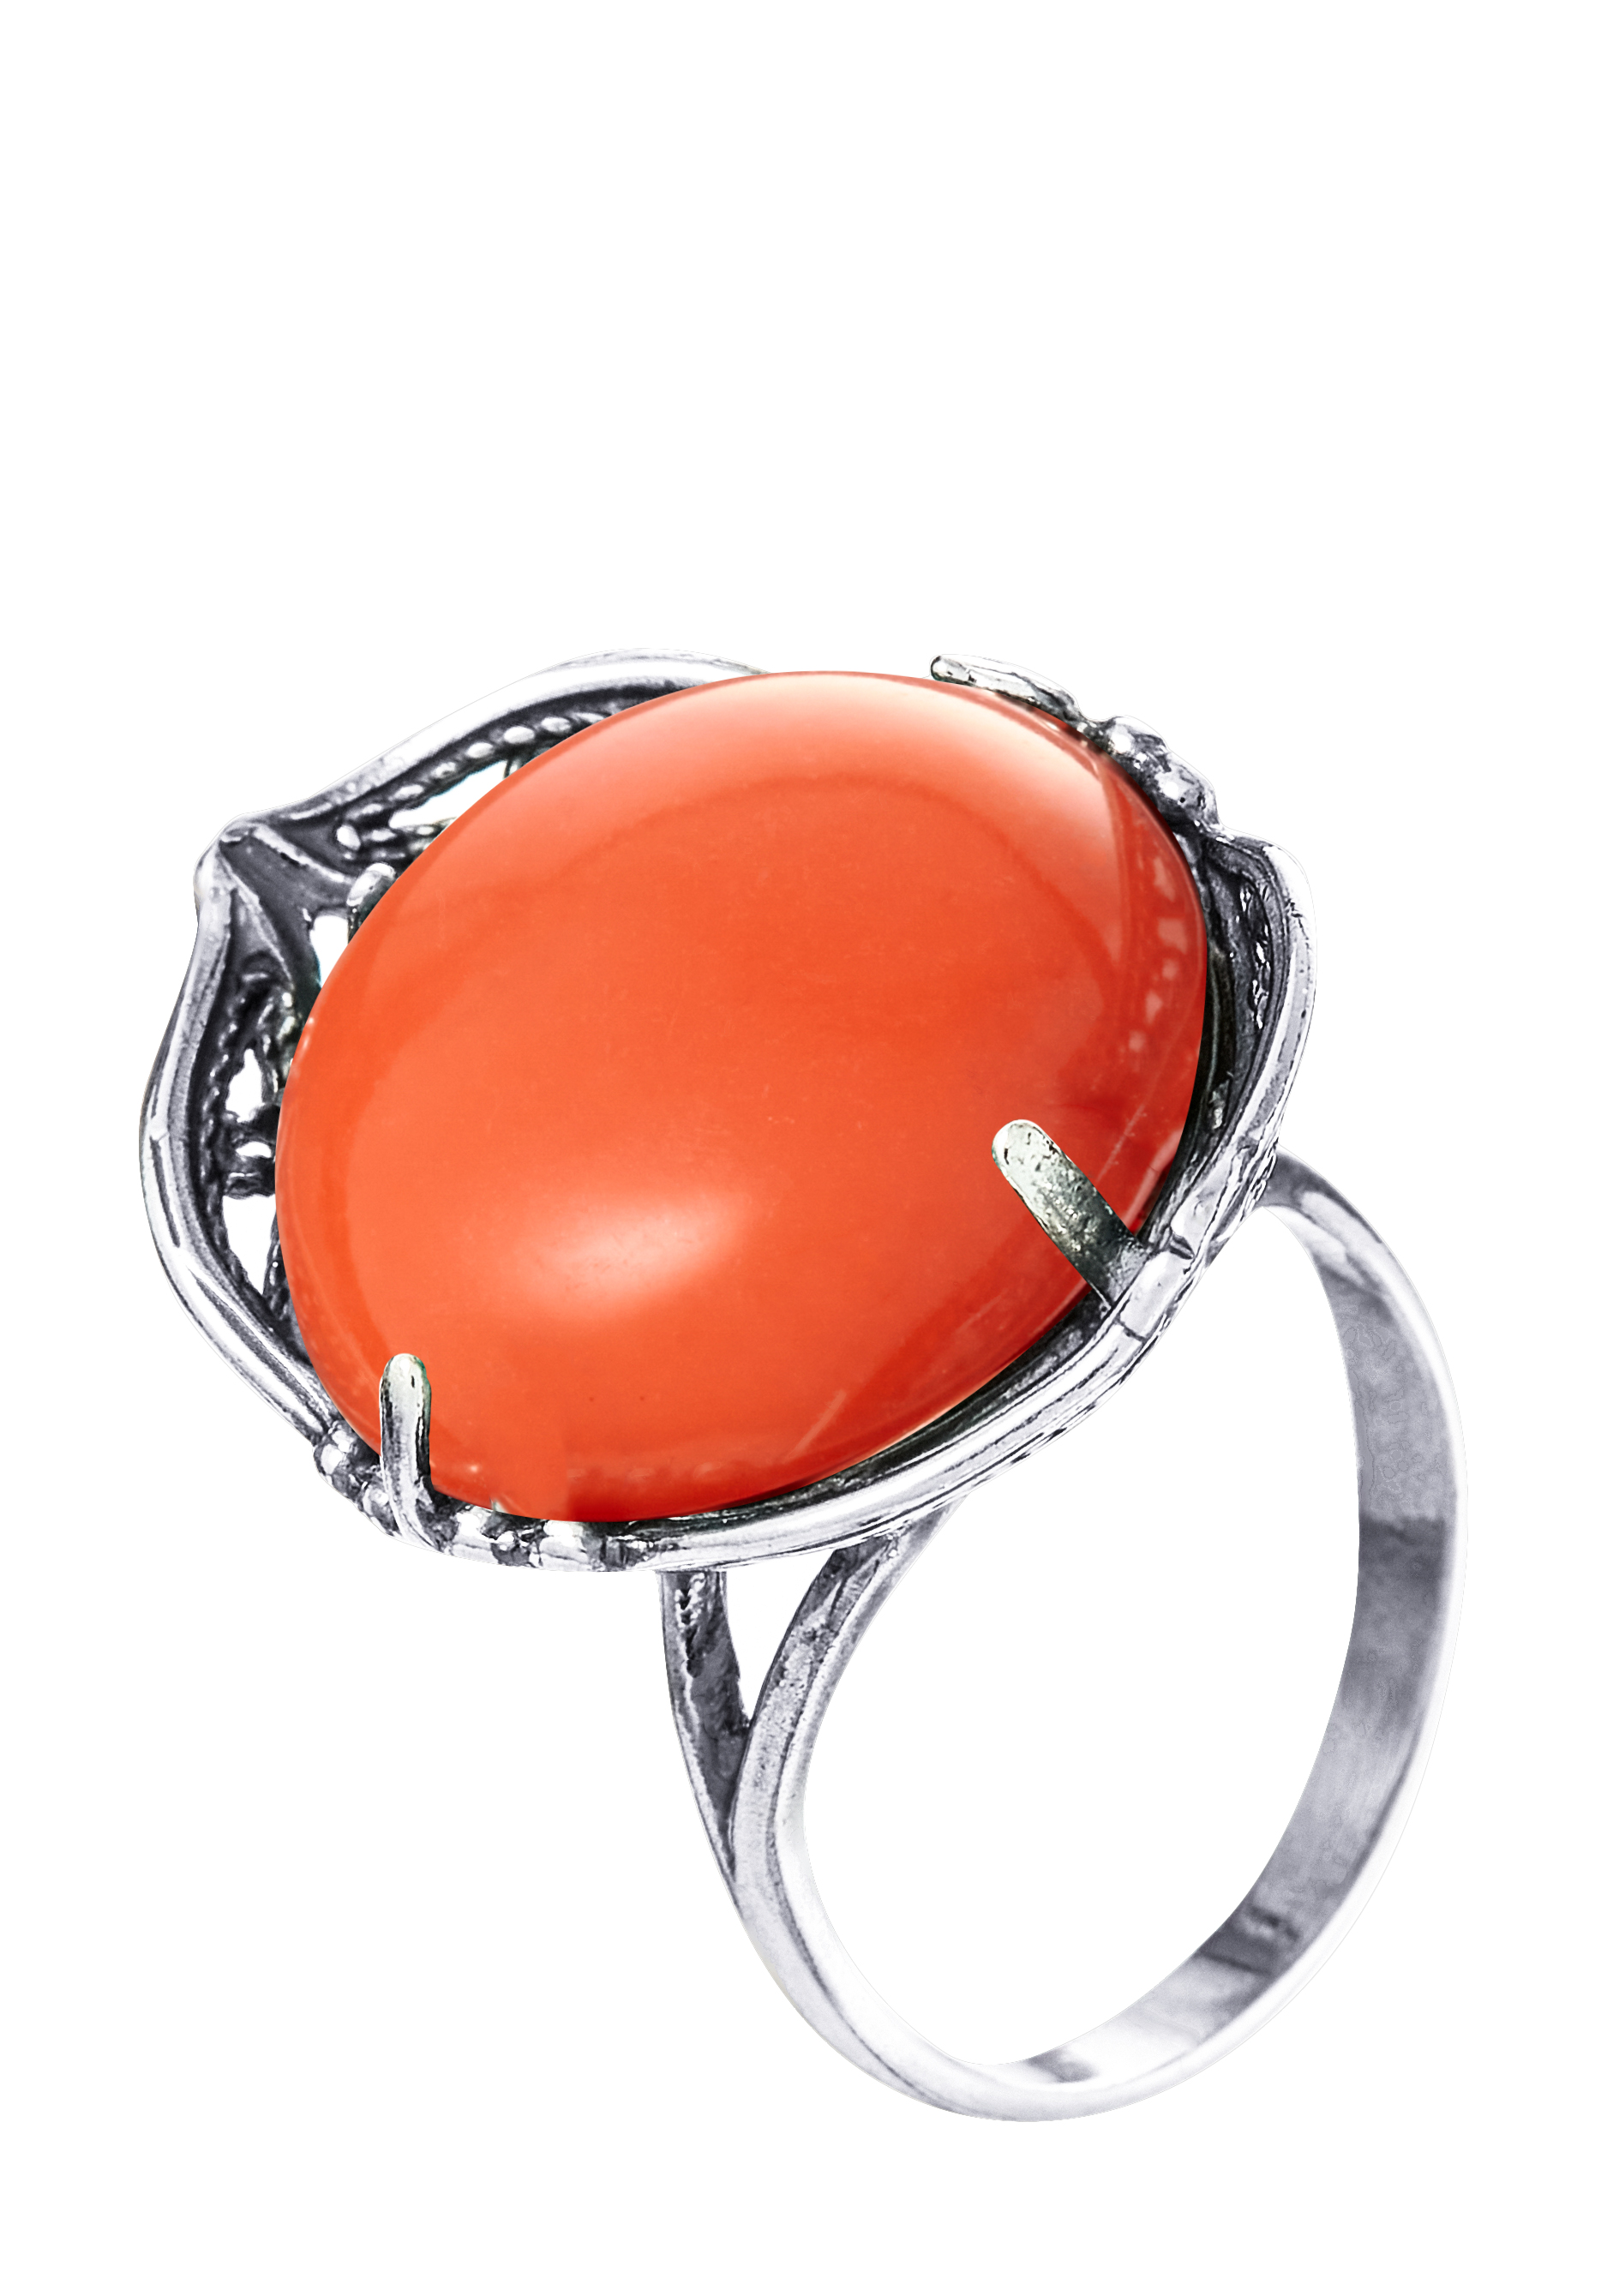 Комплект «Древний эпос» Silver Star, цвет оранжевый, размер 18 перстень - фото 4